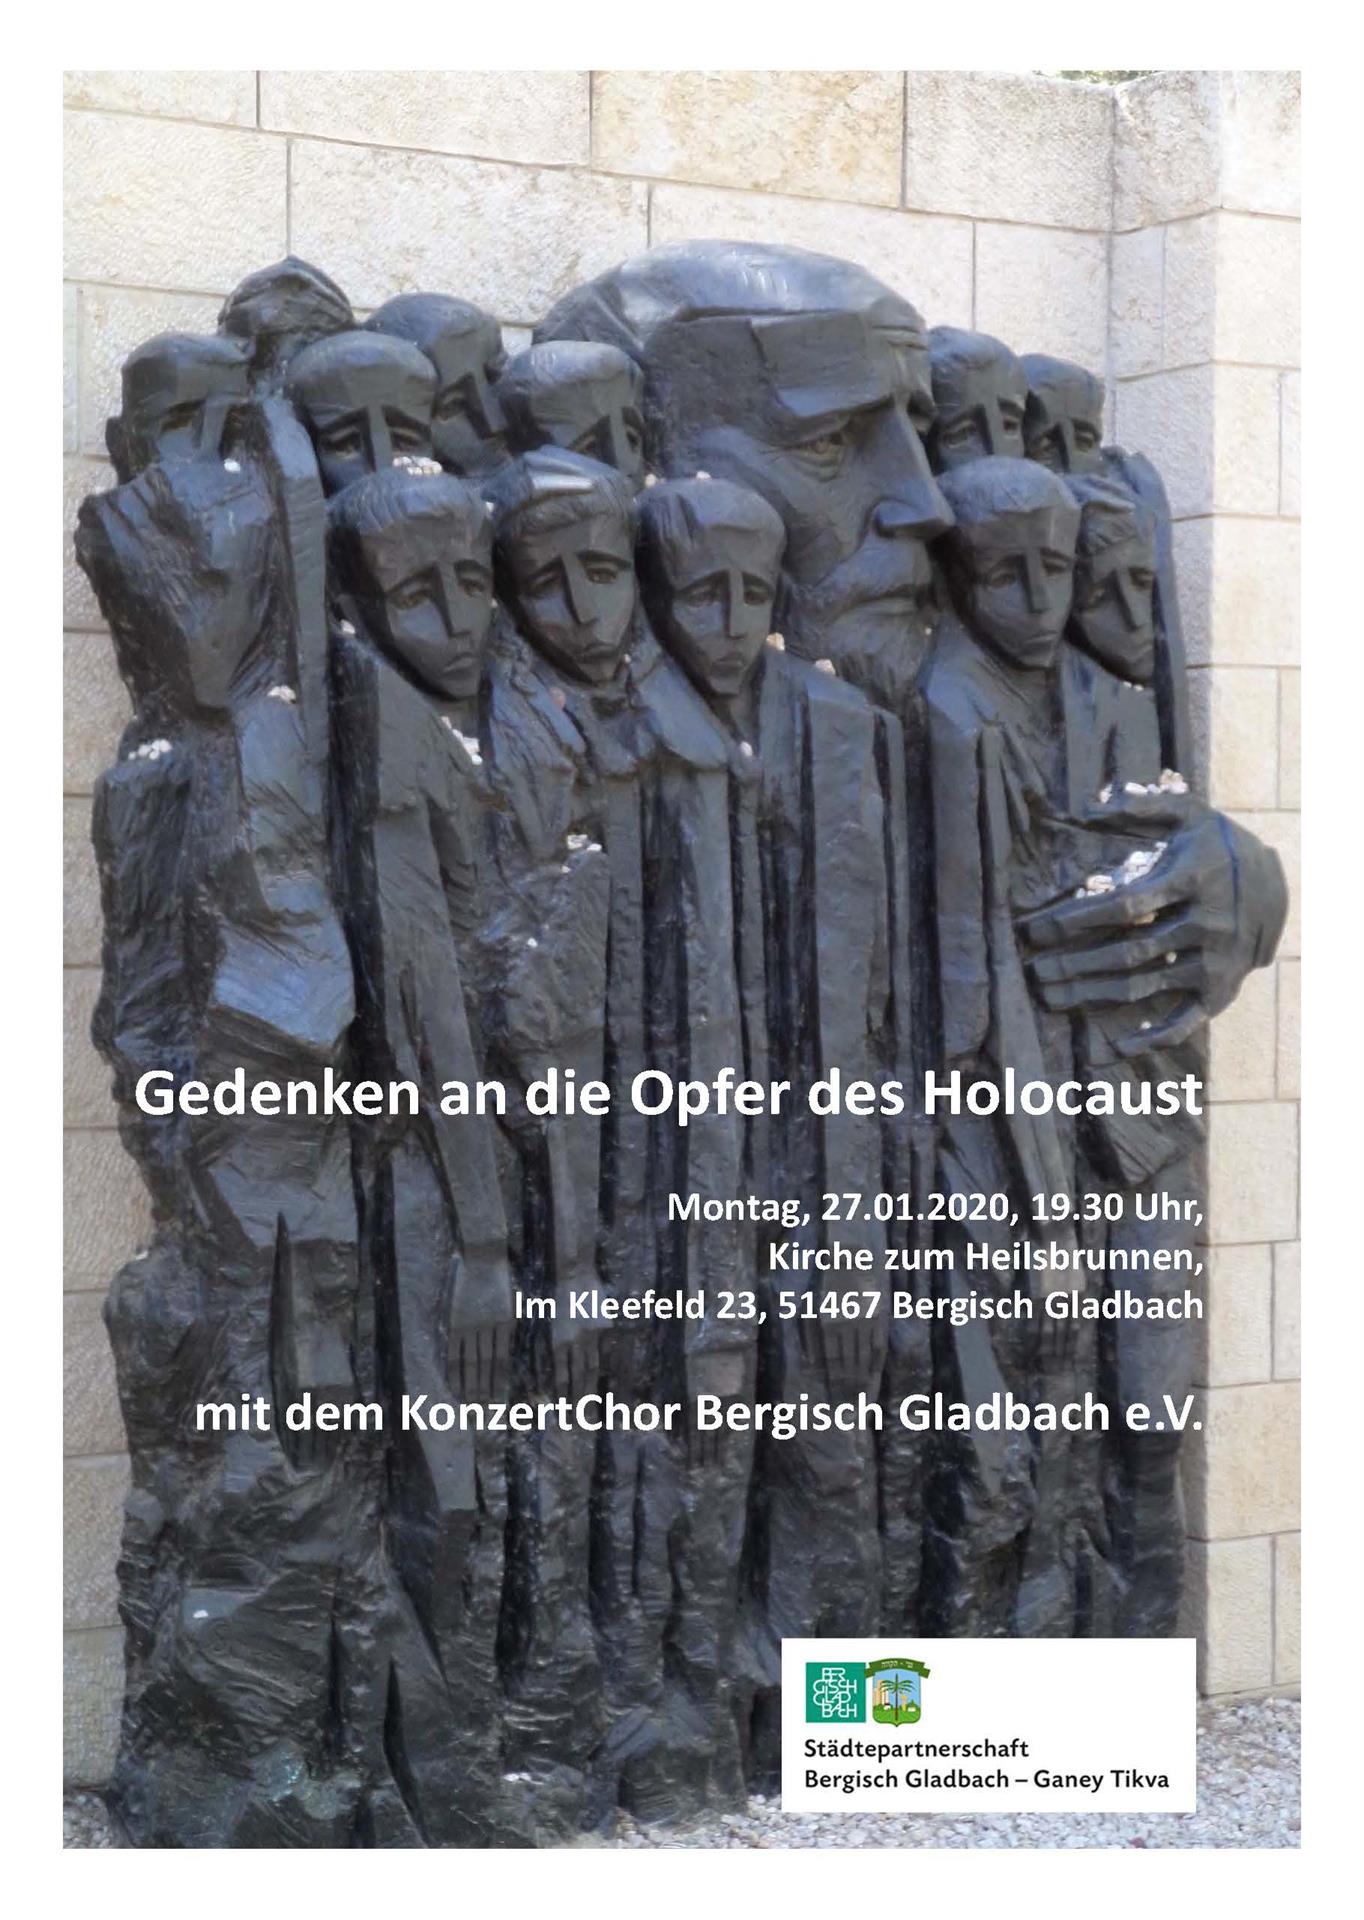 Konzert zum Gedenken an die Opfer des Holocaust mit dem KonzertChor Bergisch Gladbach e.V.